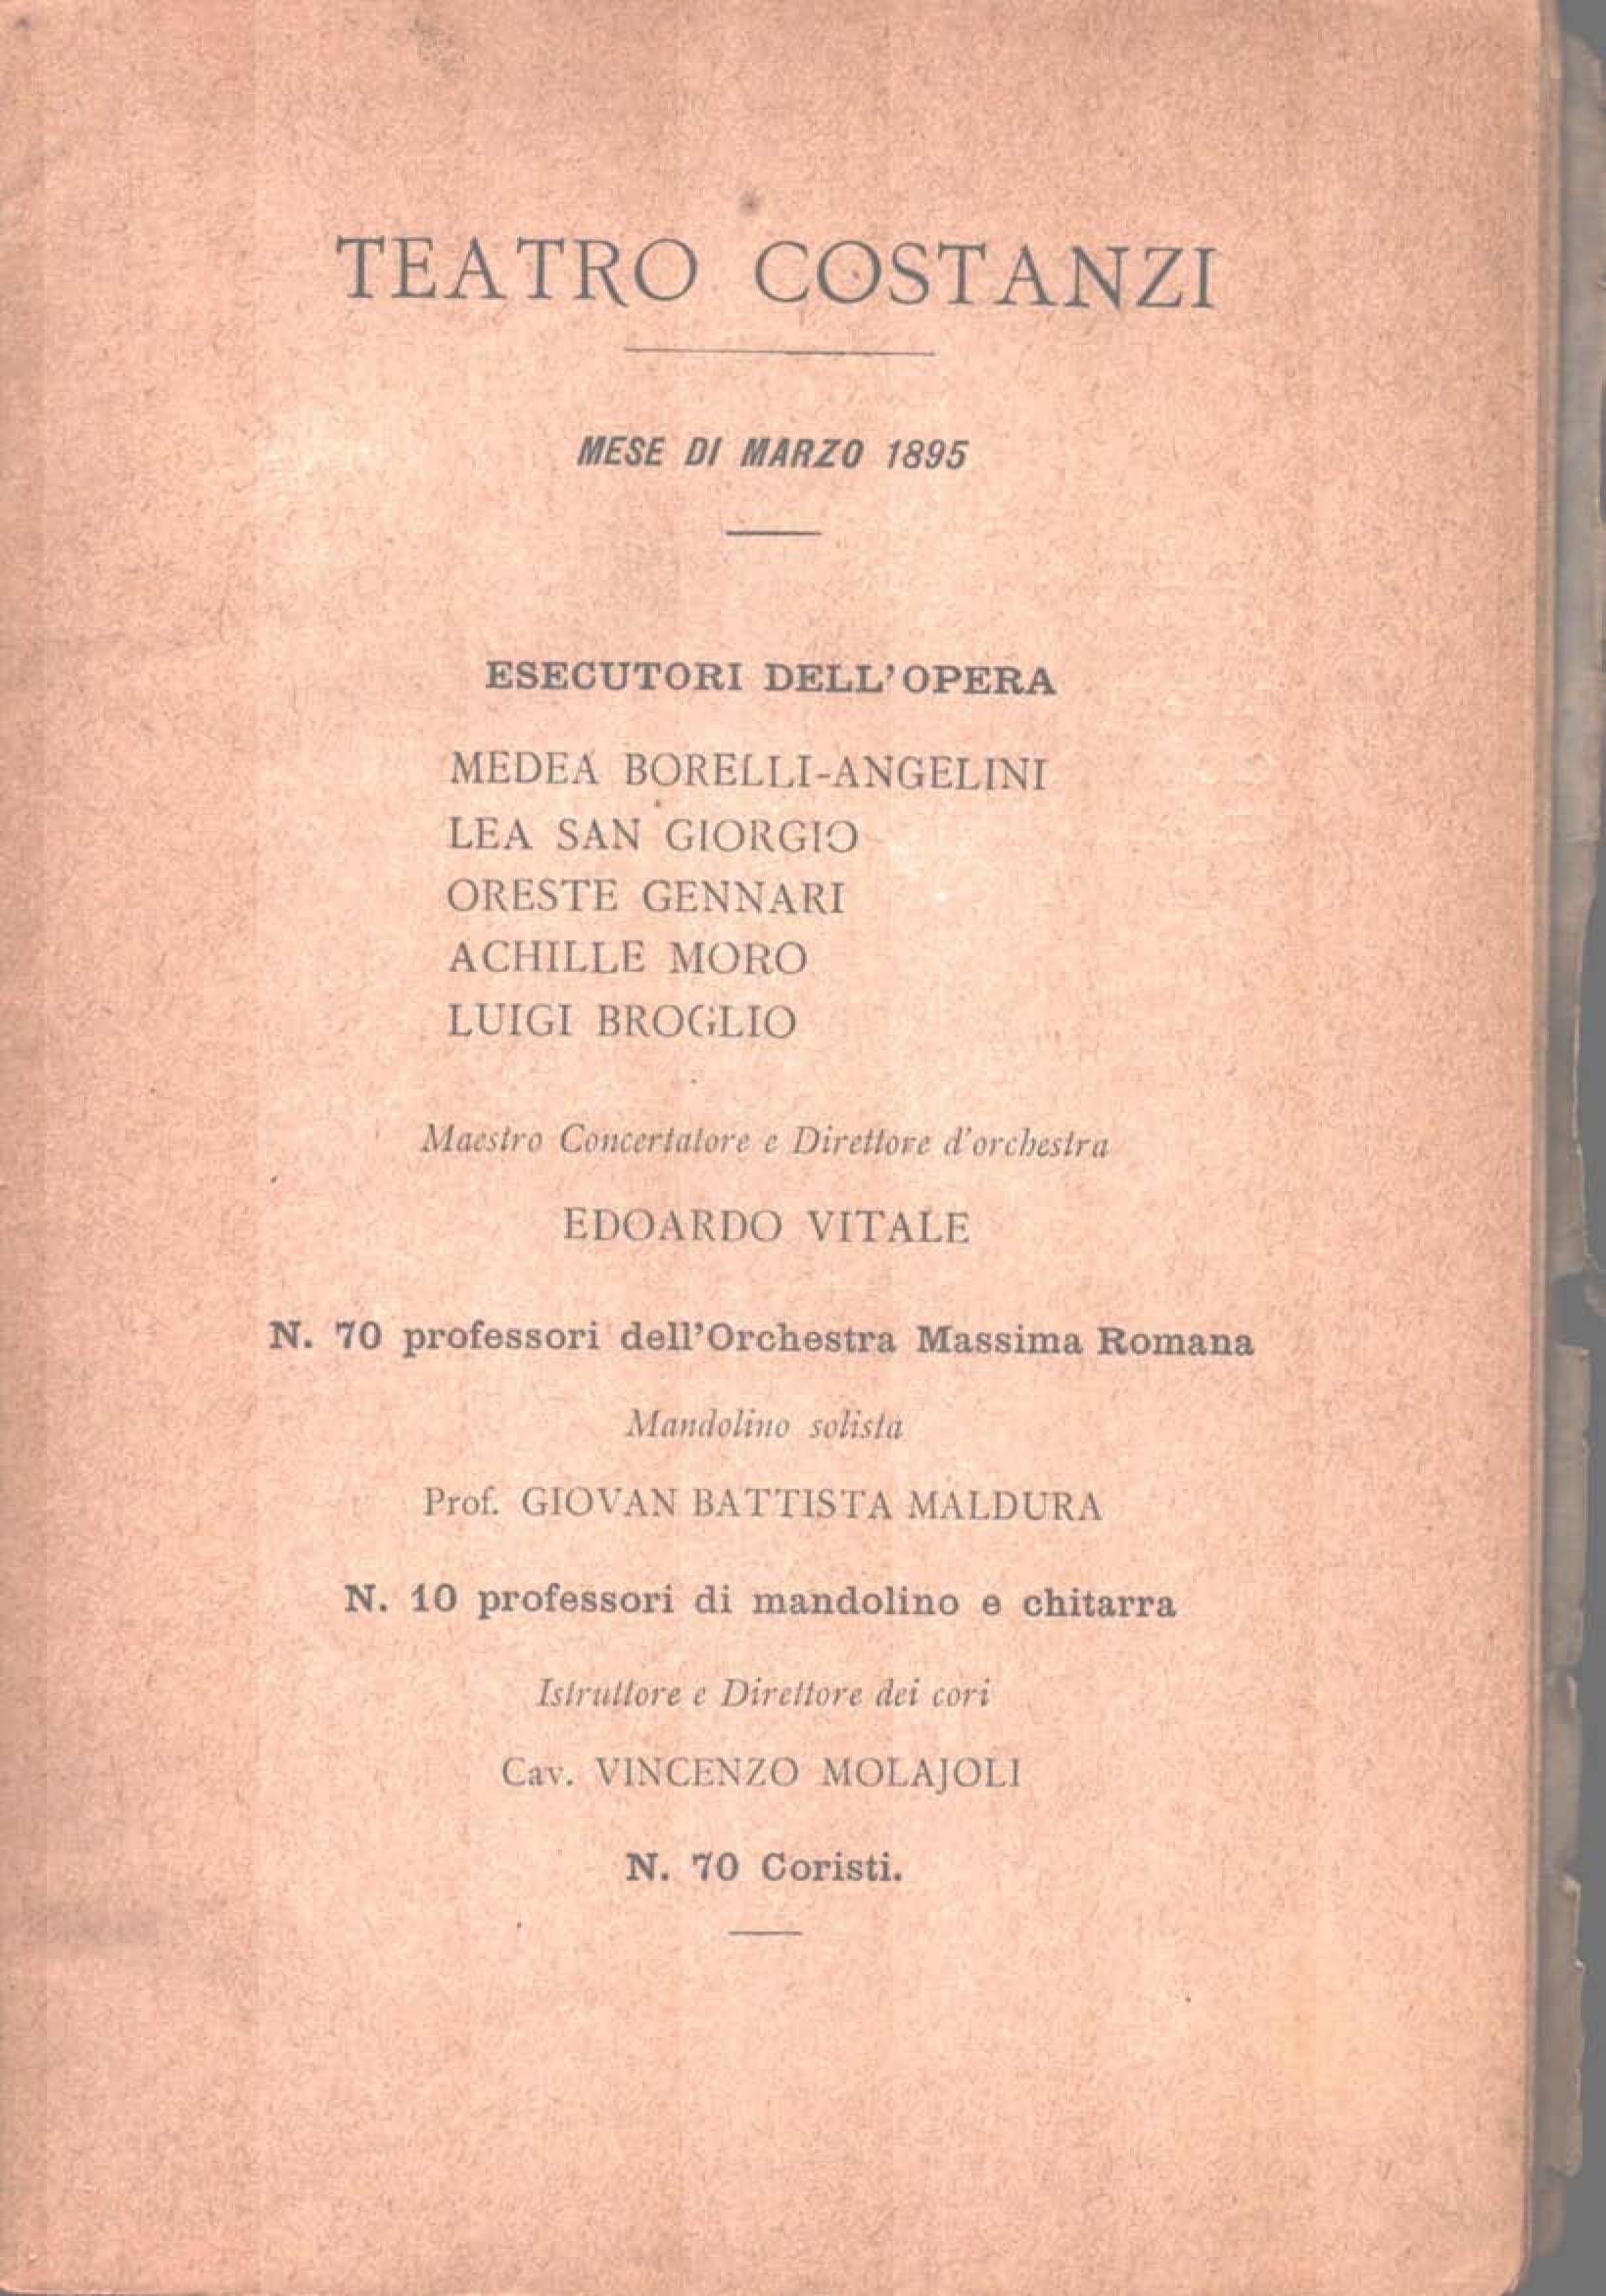 Esecutori – Libretto "A basso porto" N. Spinelli